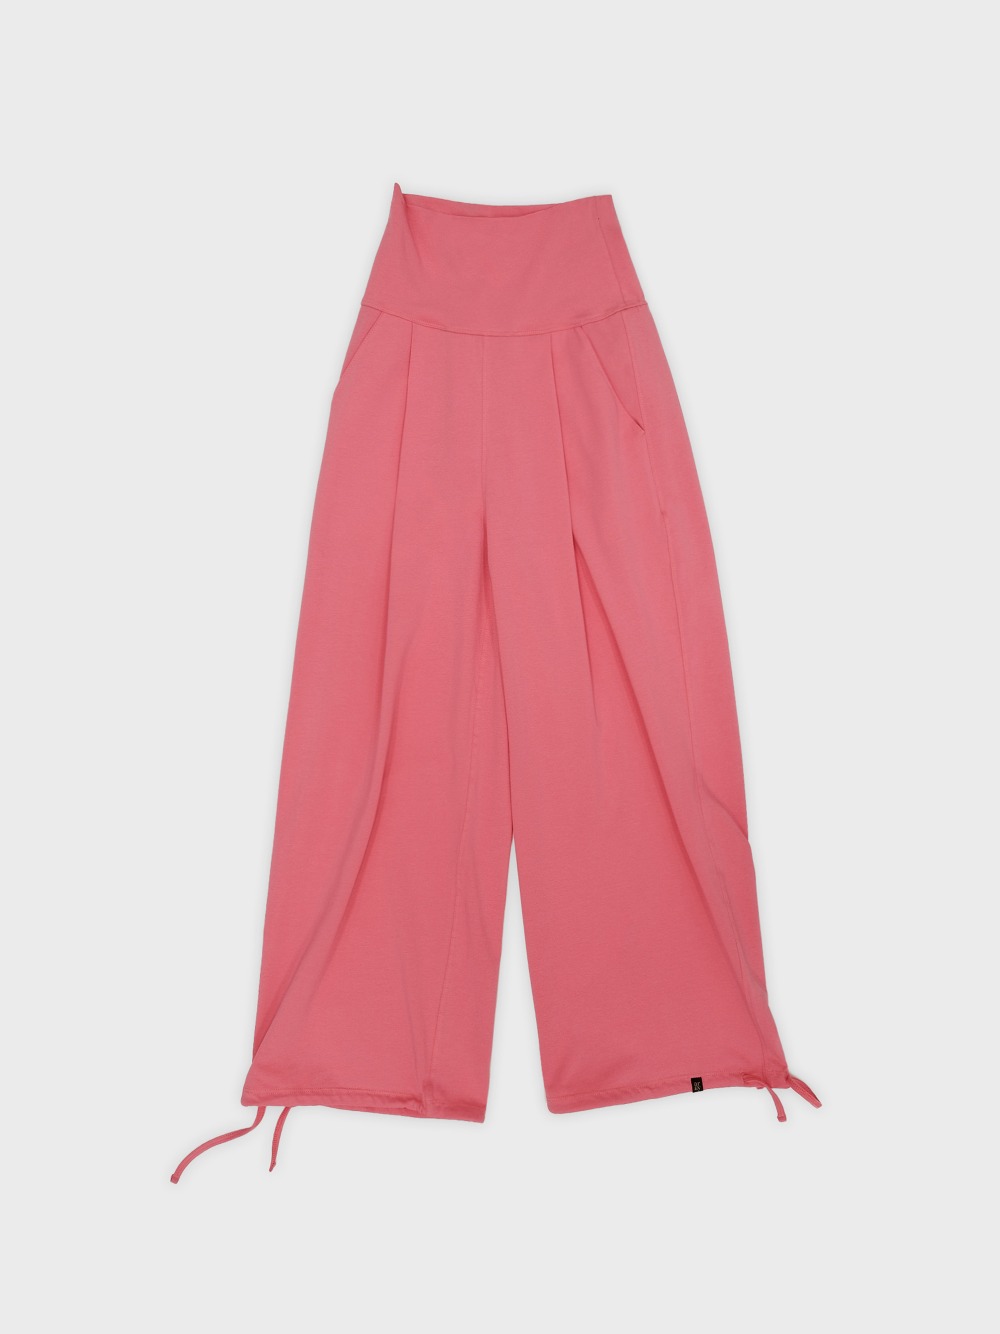 (*NEW) Surya string pants - rose pink